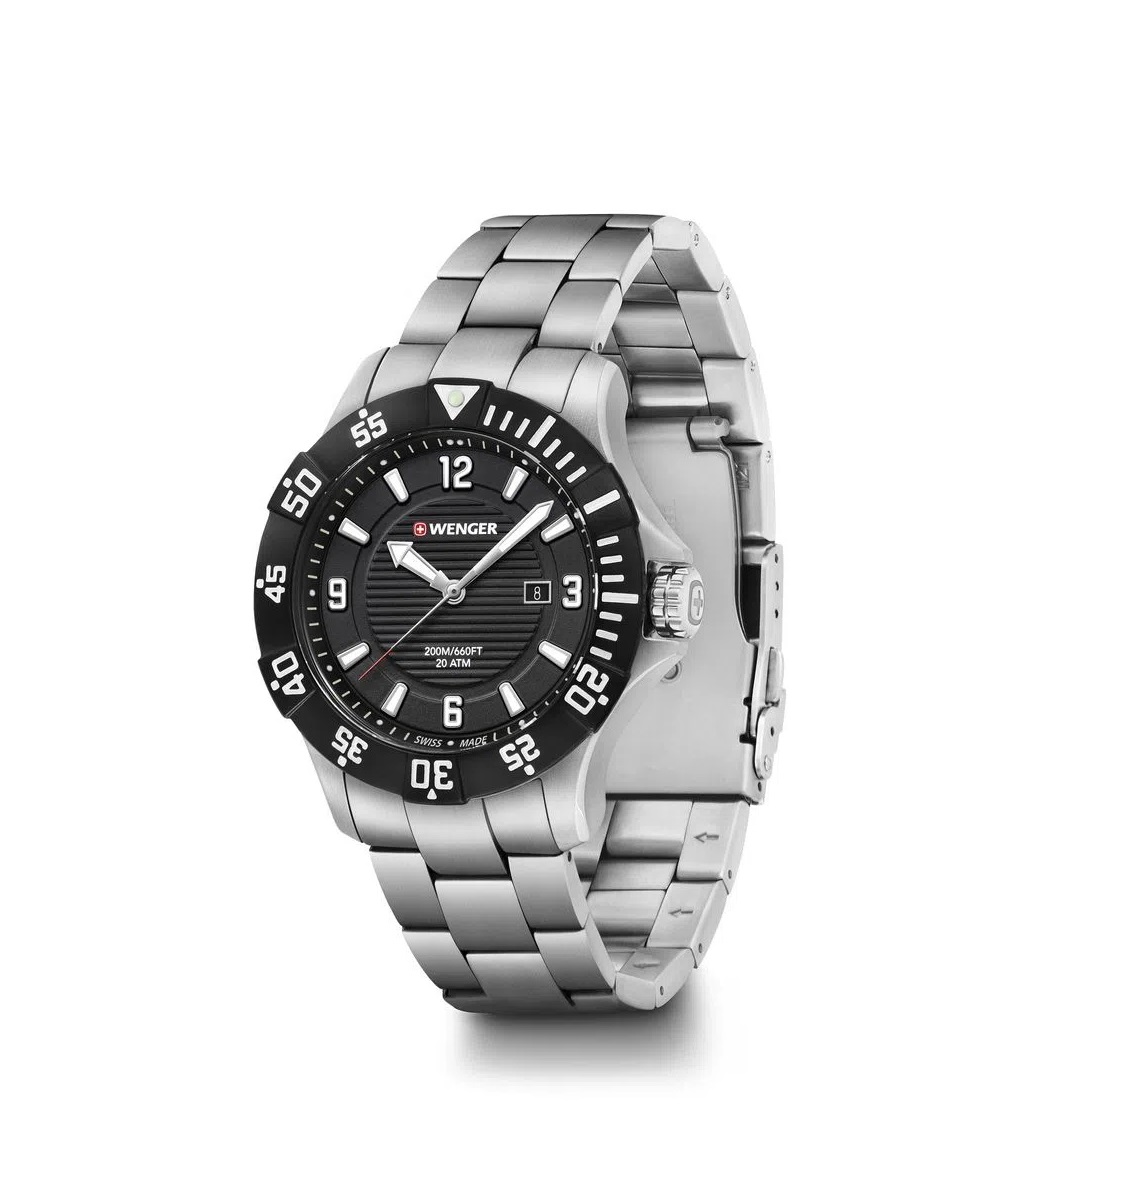 Relógio Masculino Suíço Wenger linha Seaforce aço inox 01.0641.131  - Mix Eletro